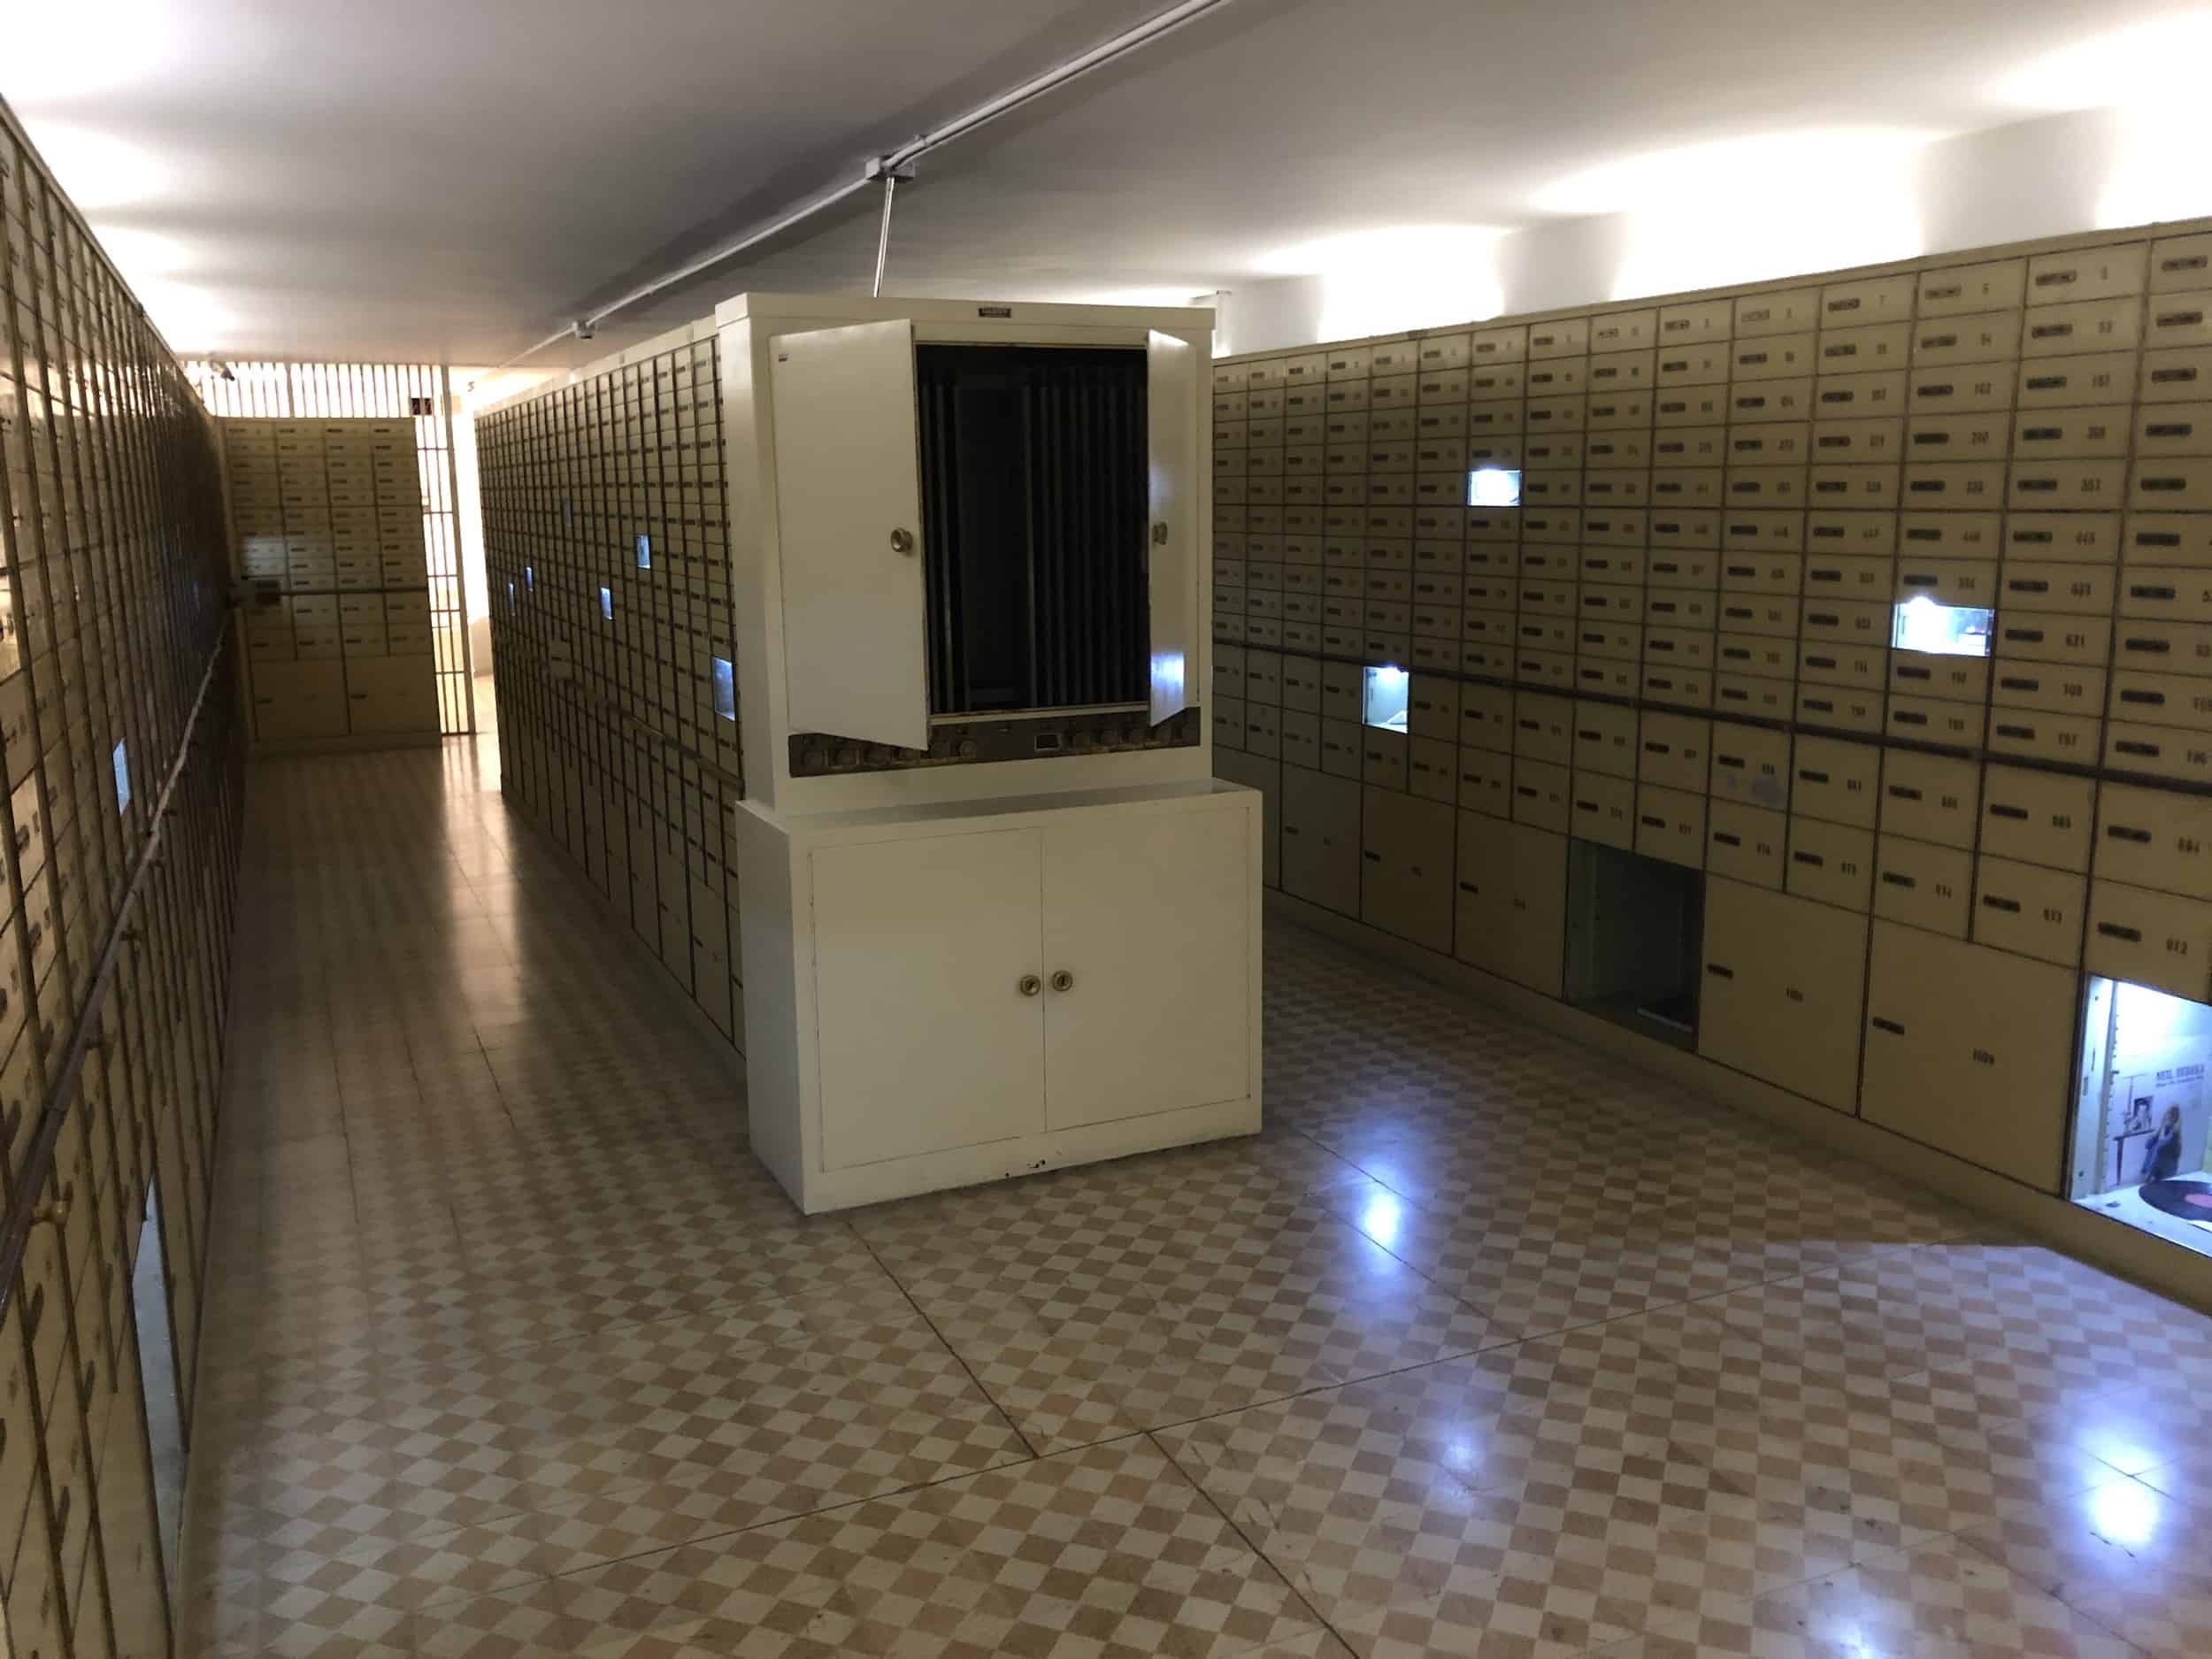 Safe deposit box vault at the İşbank Museum